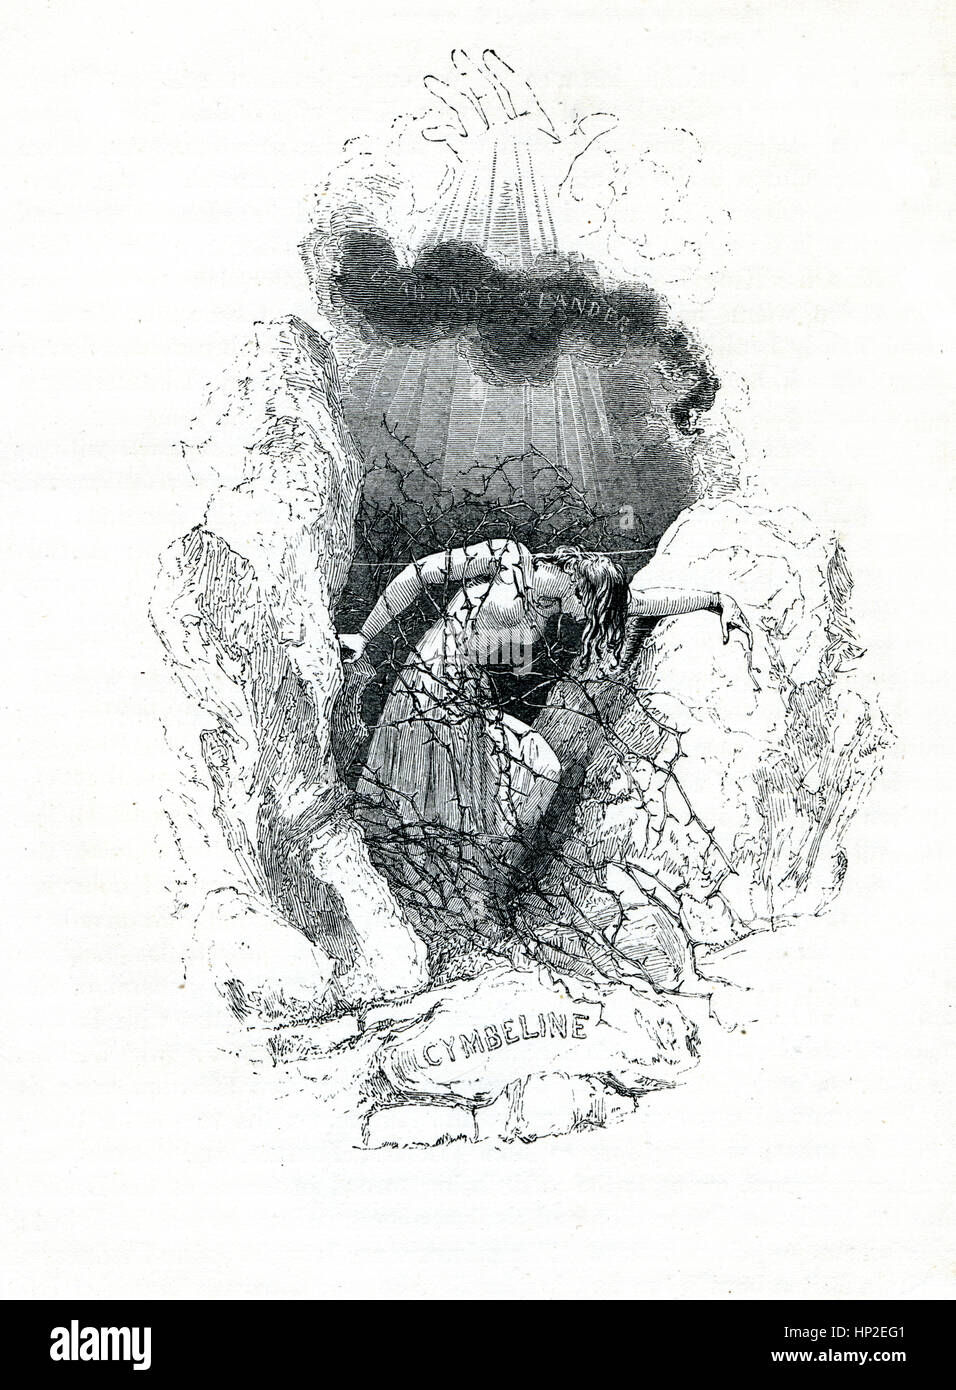 Libro de estilo victoriano, Cymbeline frontispicio de la obra de William Shakespeare desde el 1849 libro ilustrado heroínas de Shakespeare. Foto de stock